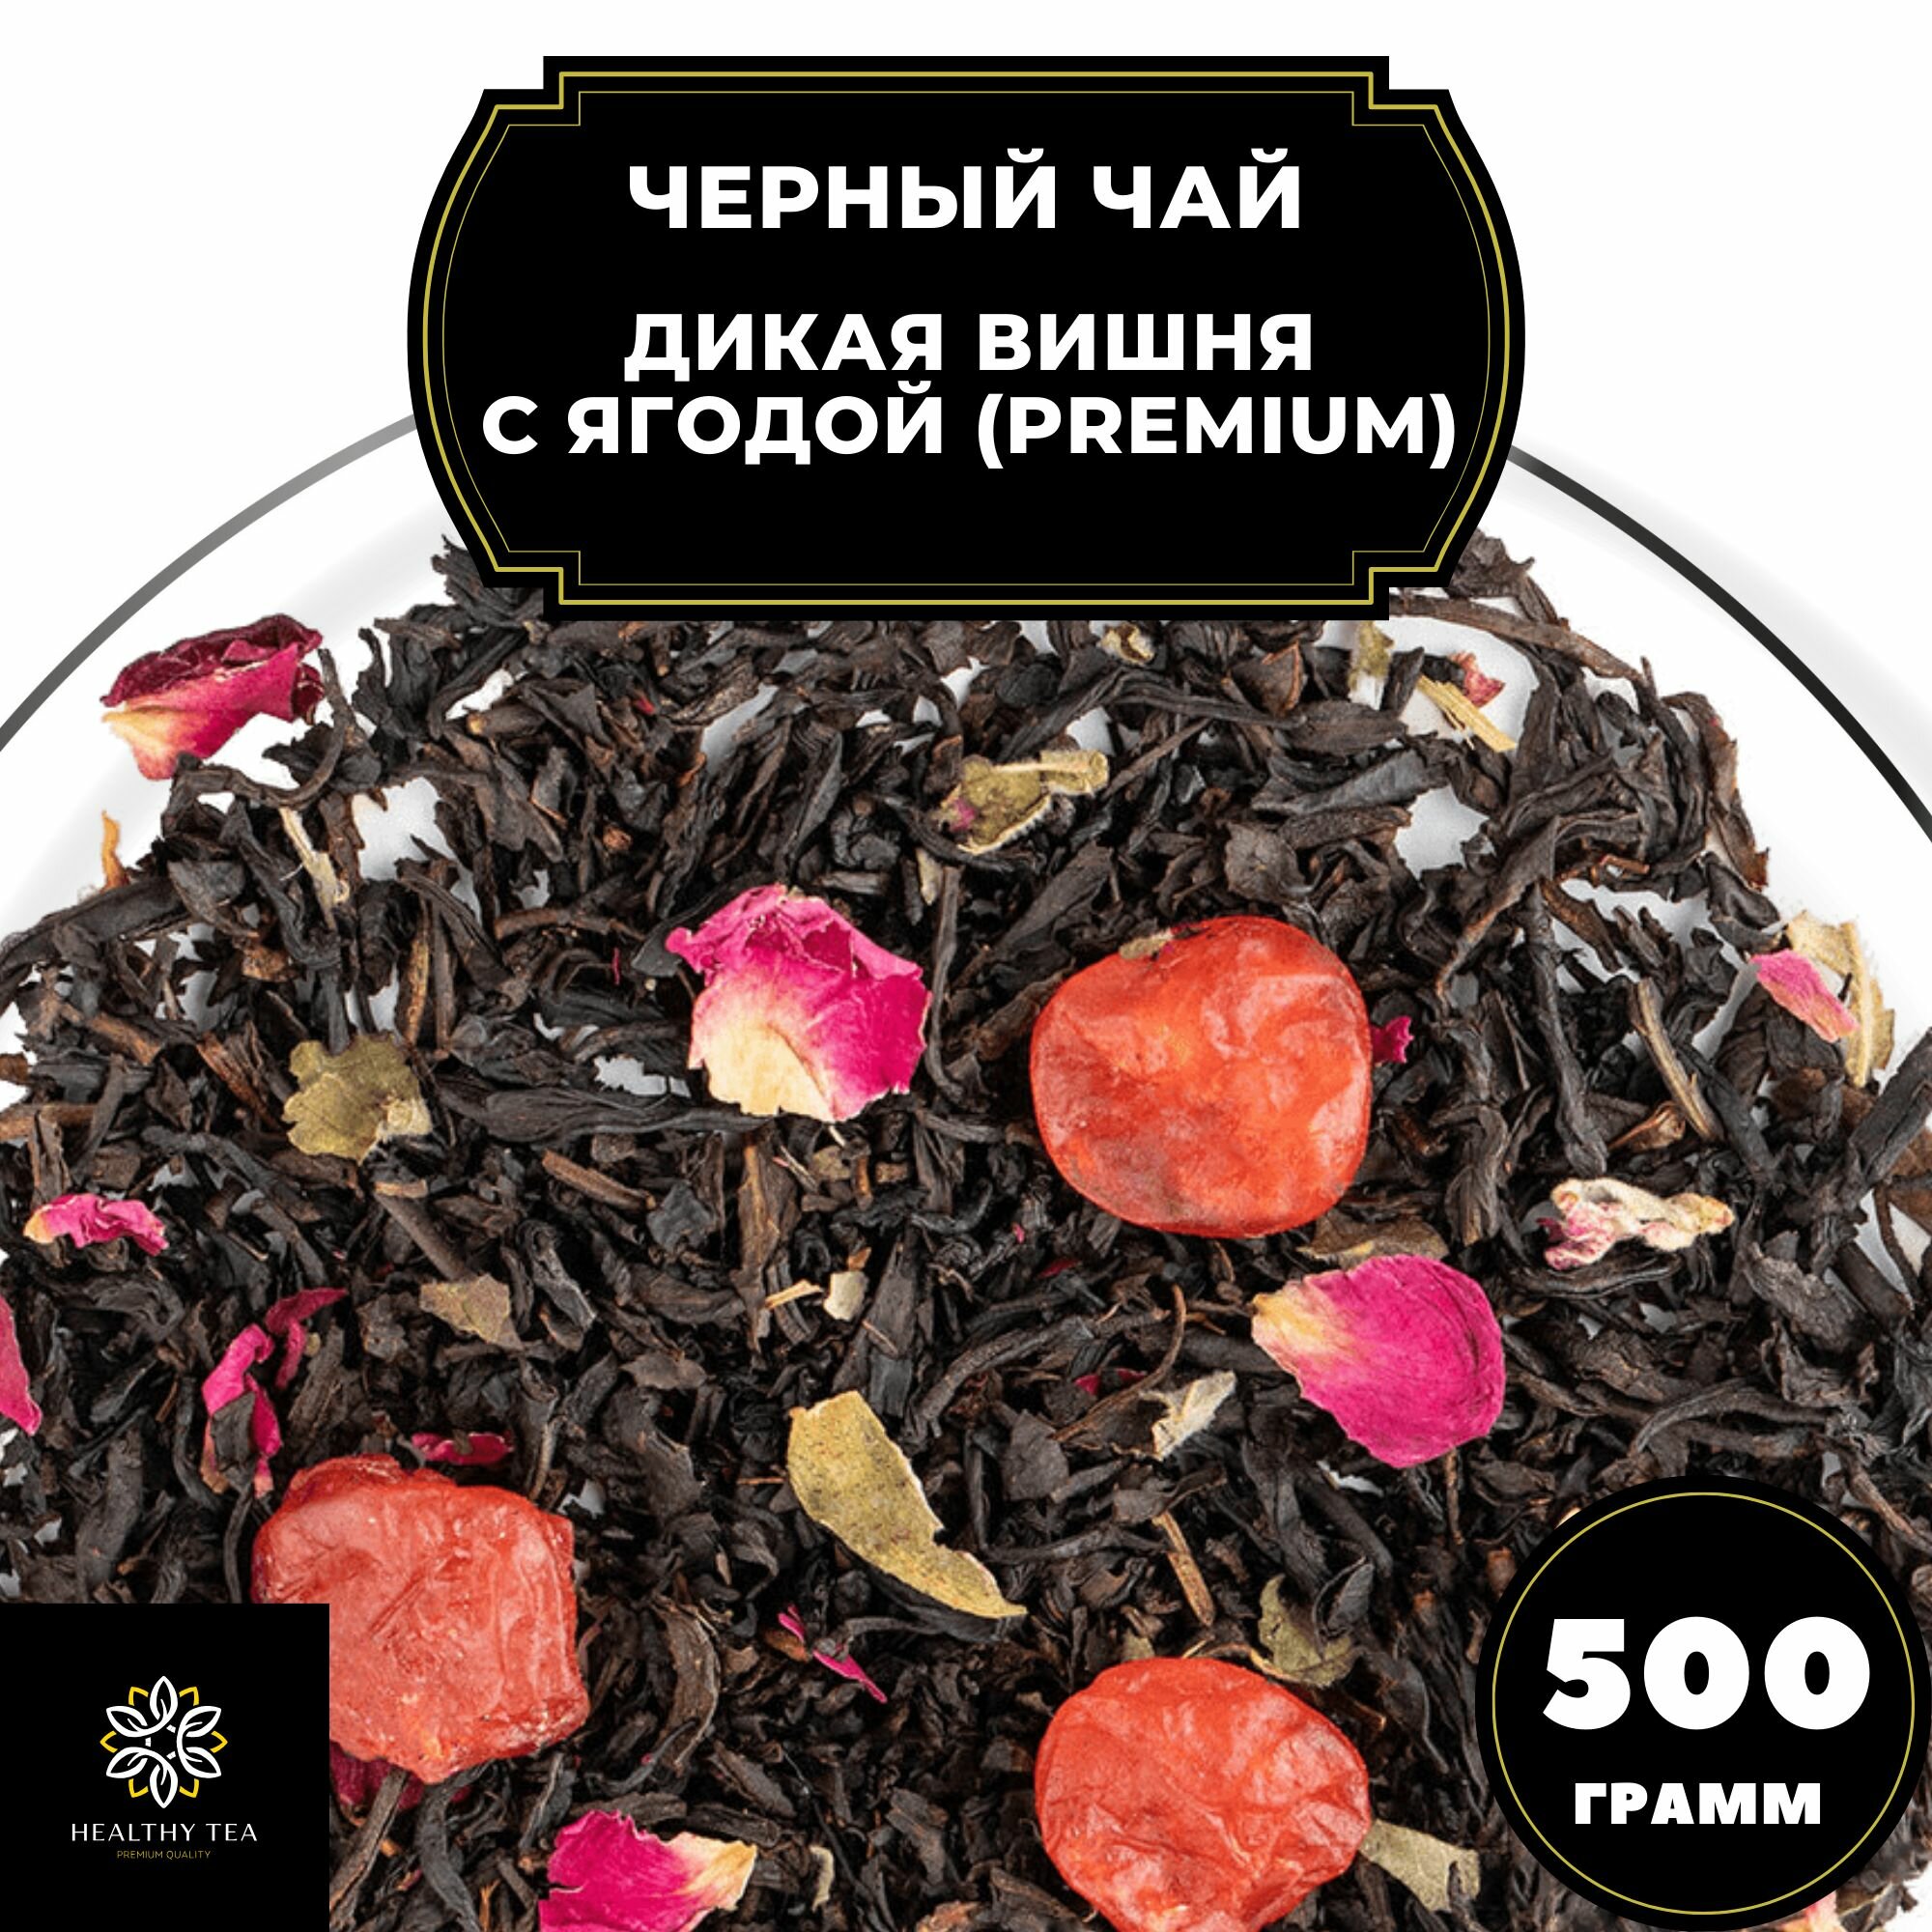 Китайский Черный чай с вишней и розой "Дикая вишня с ягодой" (Premium) Полезный чай / HEALTHY TEA, 500 гр